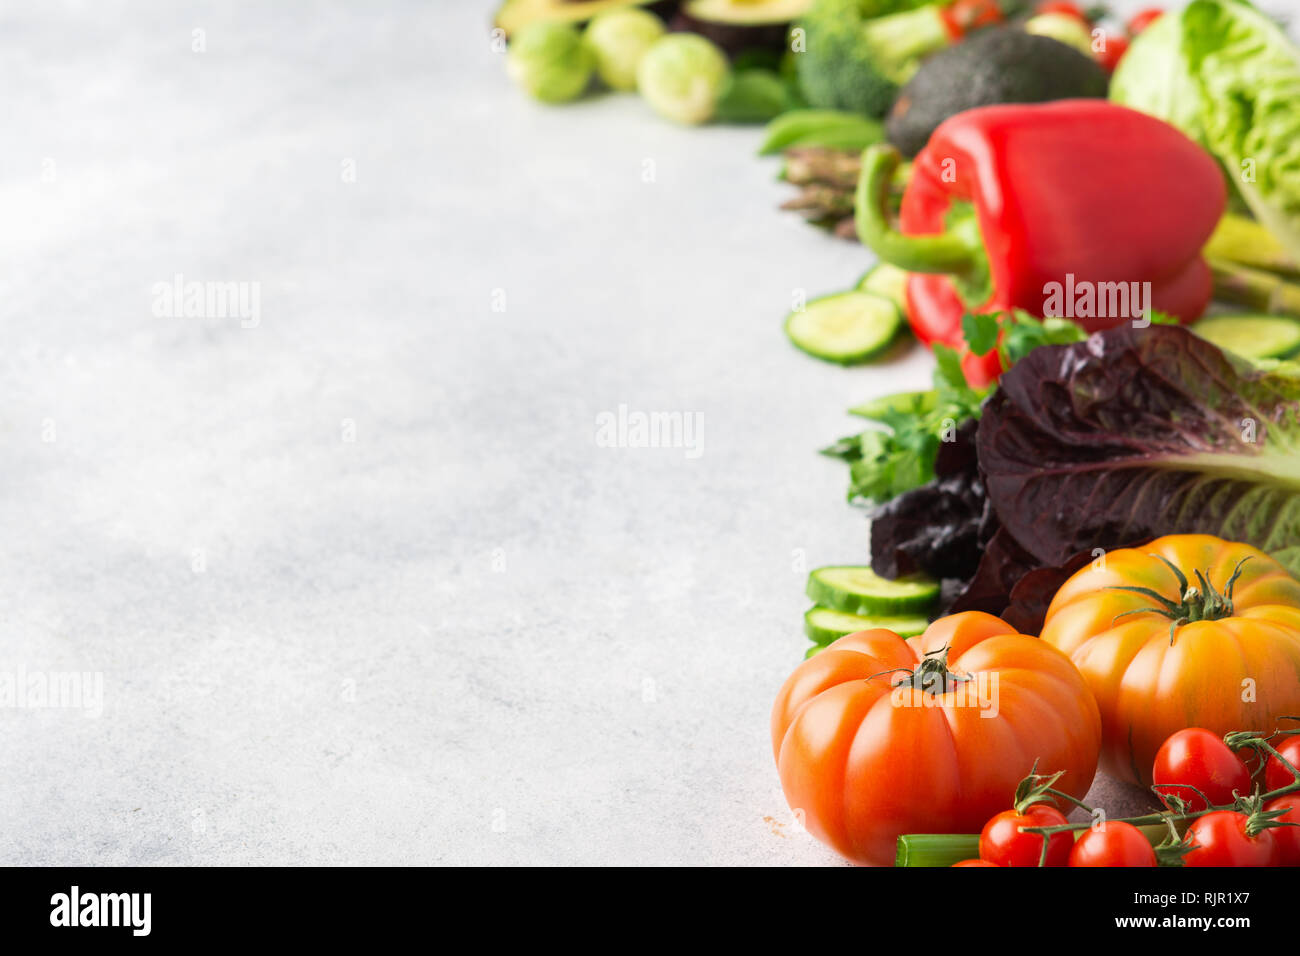 Des ingrédients frais pour la salade, tomates laitue persil Poivron Concombre avocat brocoli oignon pois sur le tableau blanc, copy space Banque D'Images